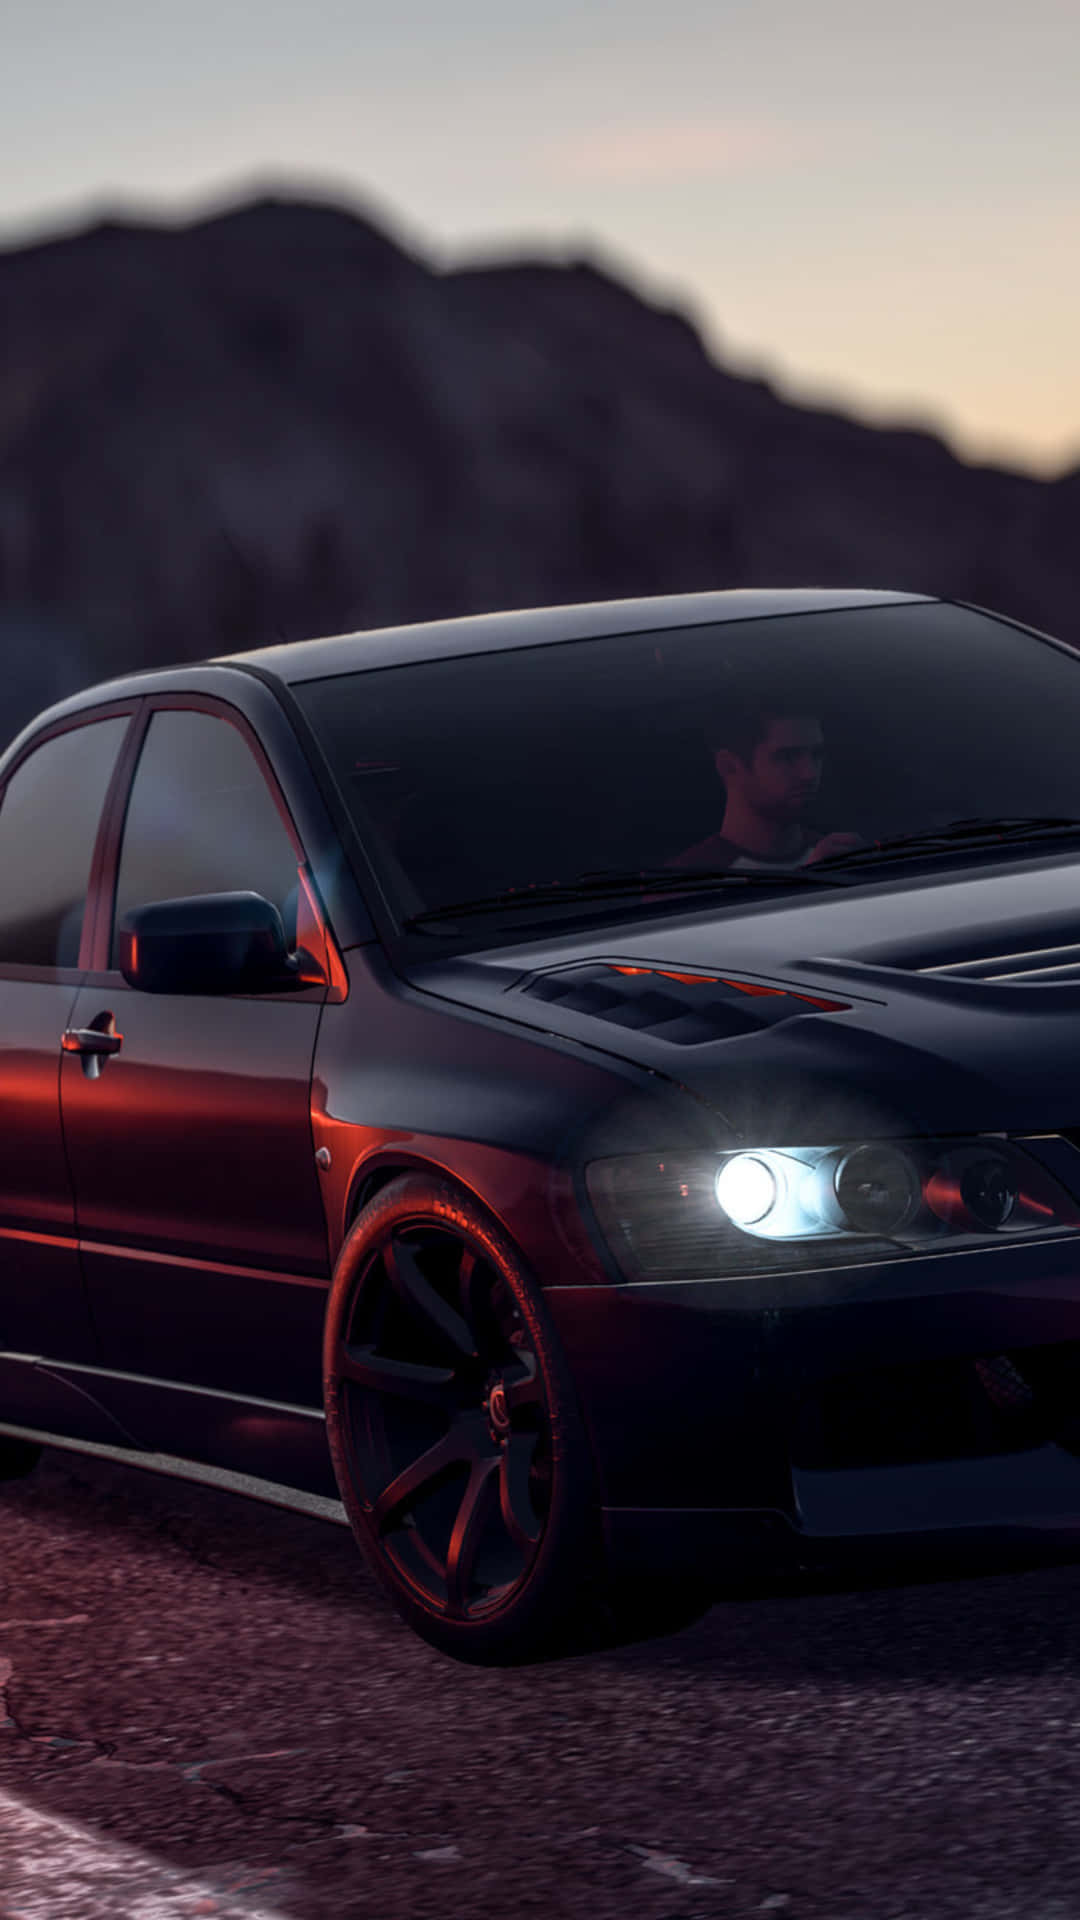 Iphonexs Bakgrundsbild För Need For Speed Payback Med En Mörkfärgad Mitsubishi Lancer Evolution.